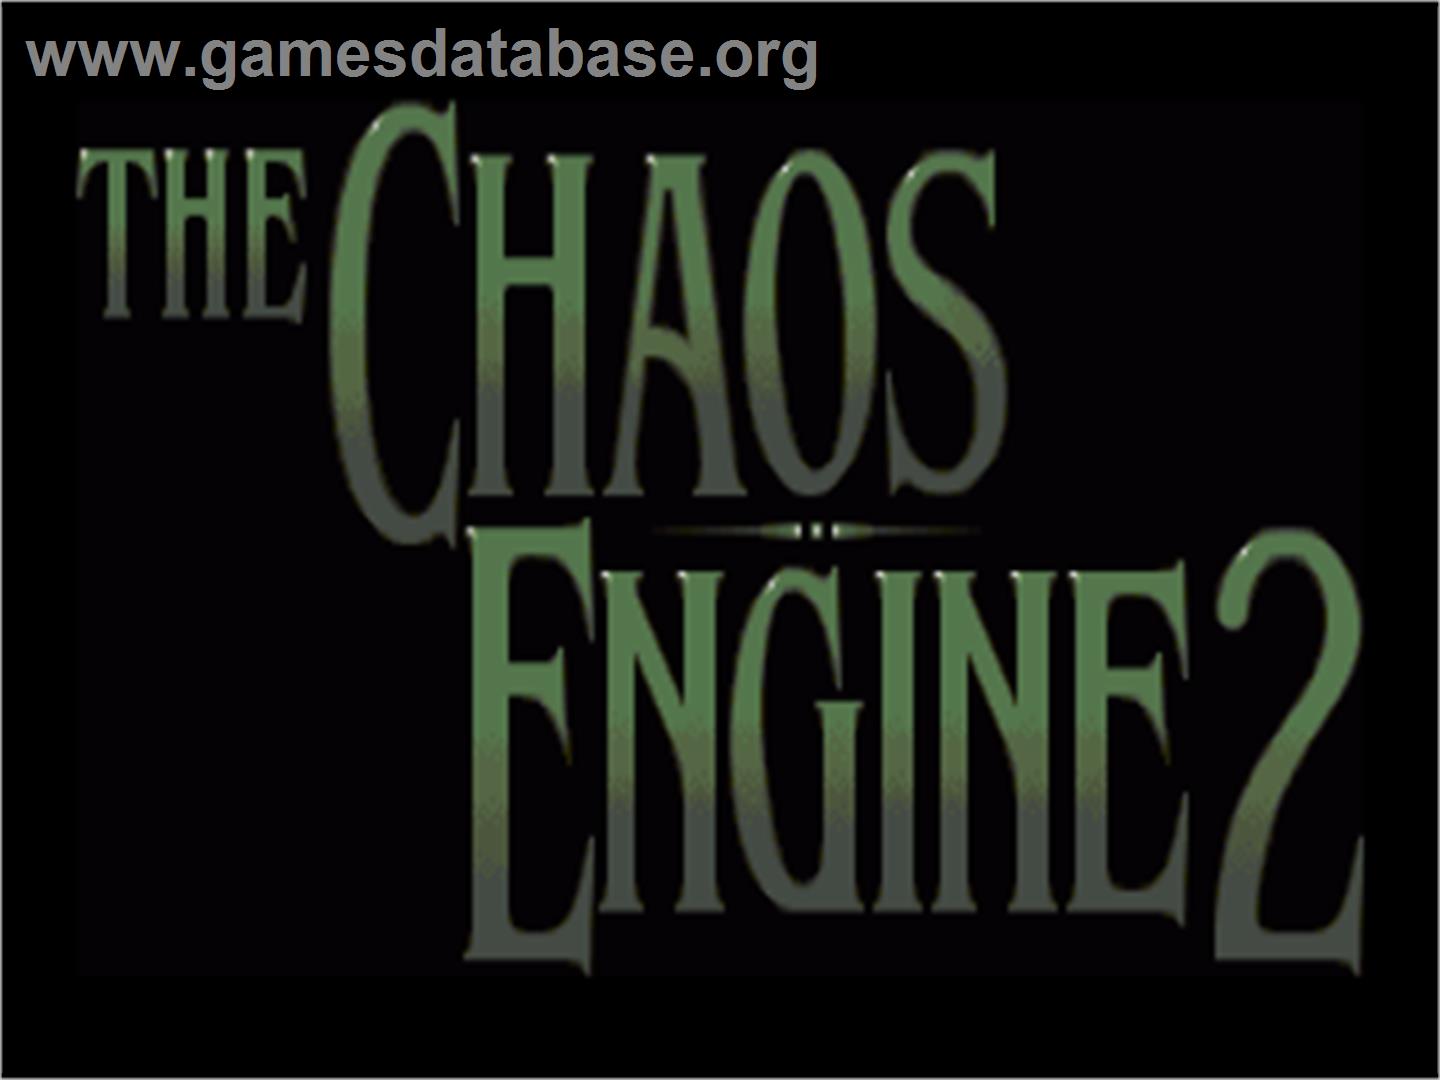 Chaos Engine 2 - Commodore Amiga - Artwork - Title Screen